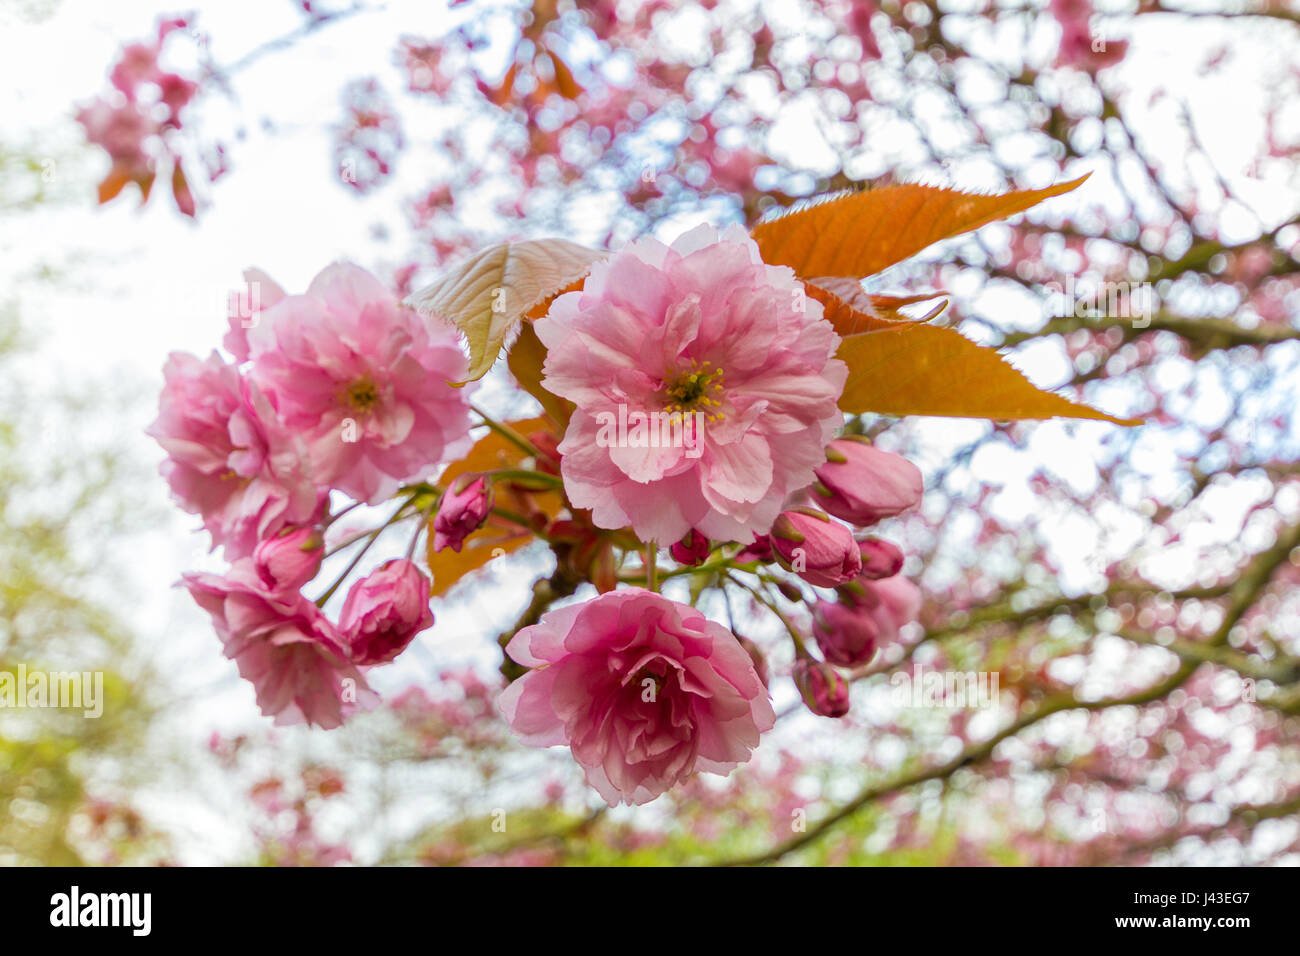 Close-up auf die rosa Blüten der Prunus Serrulata Kwanzan Kirsche Baum in Jesmond Dene Park in Newcastle, UK erschossen am April Frühling Nachmittag Stockfoto